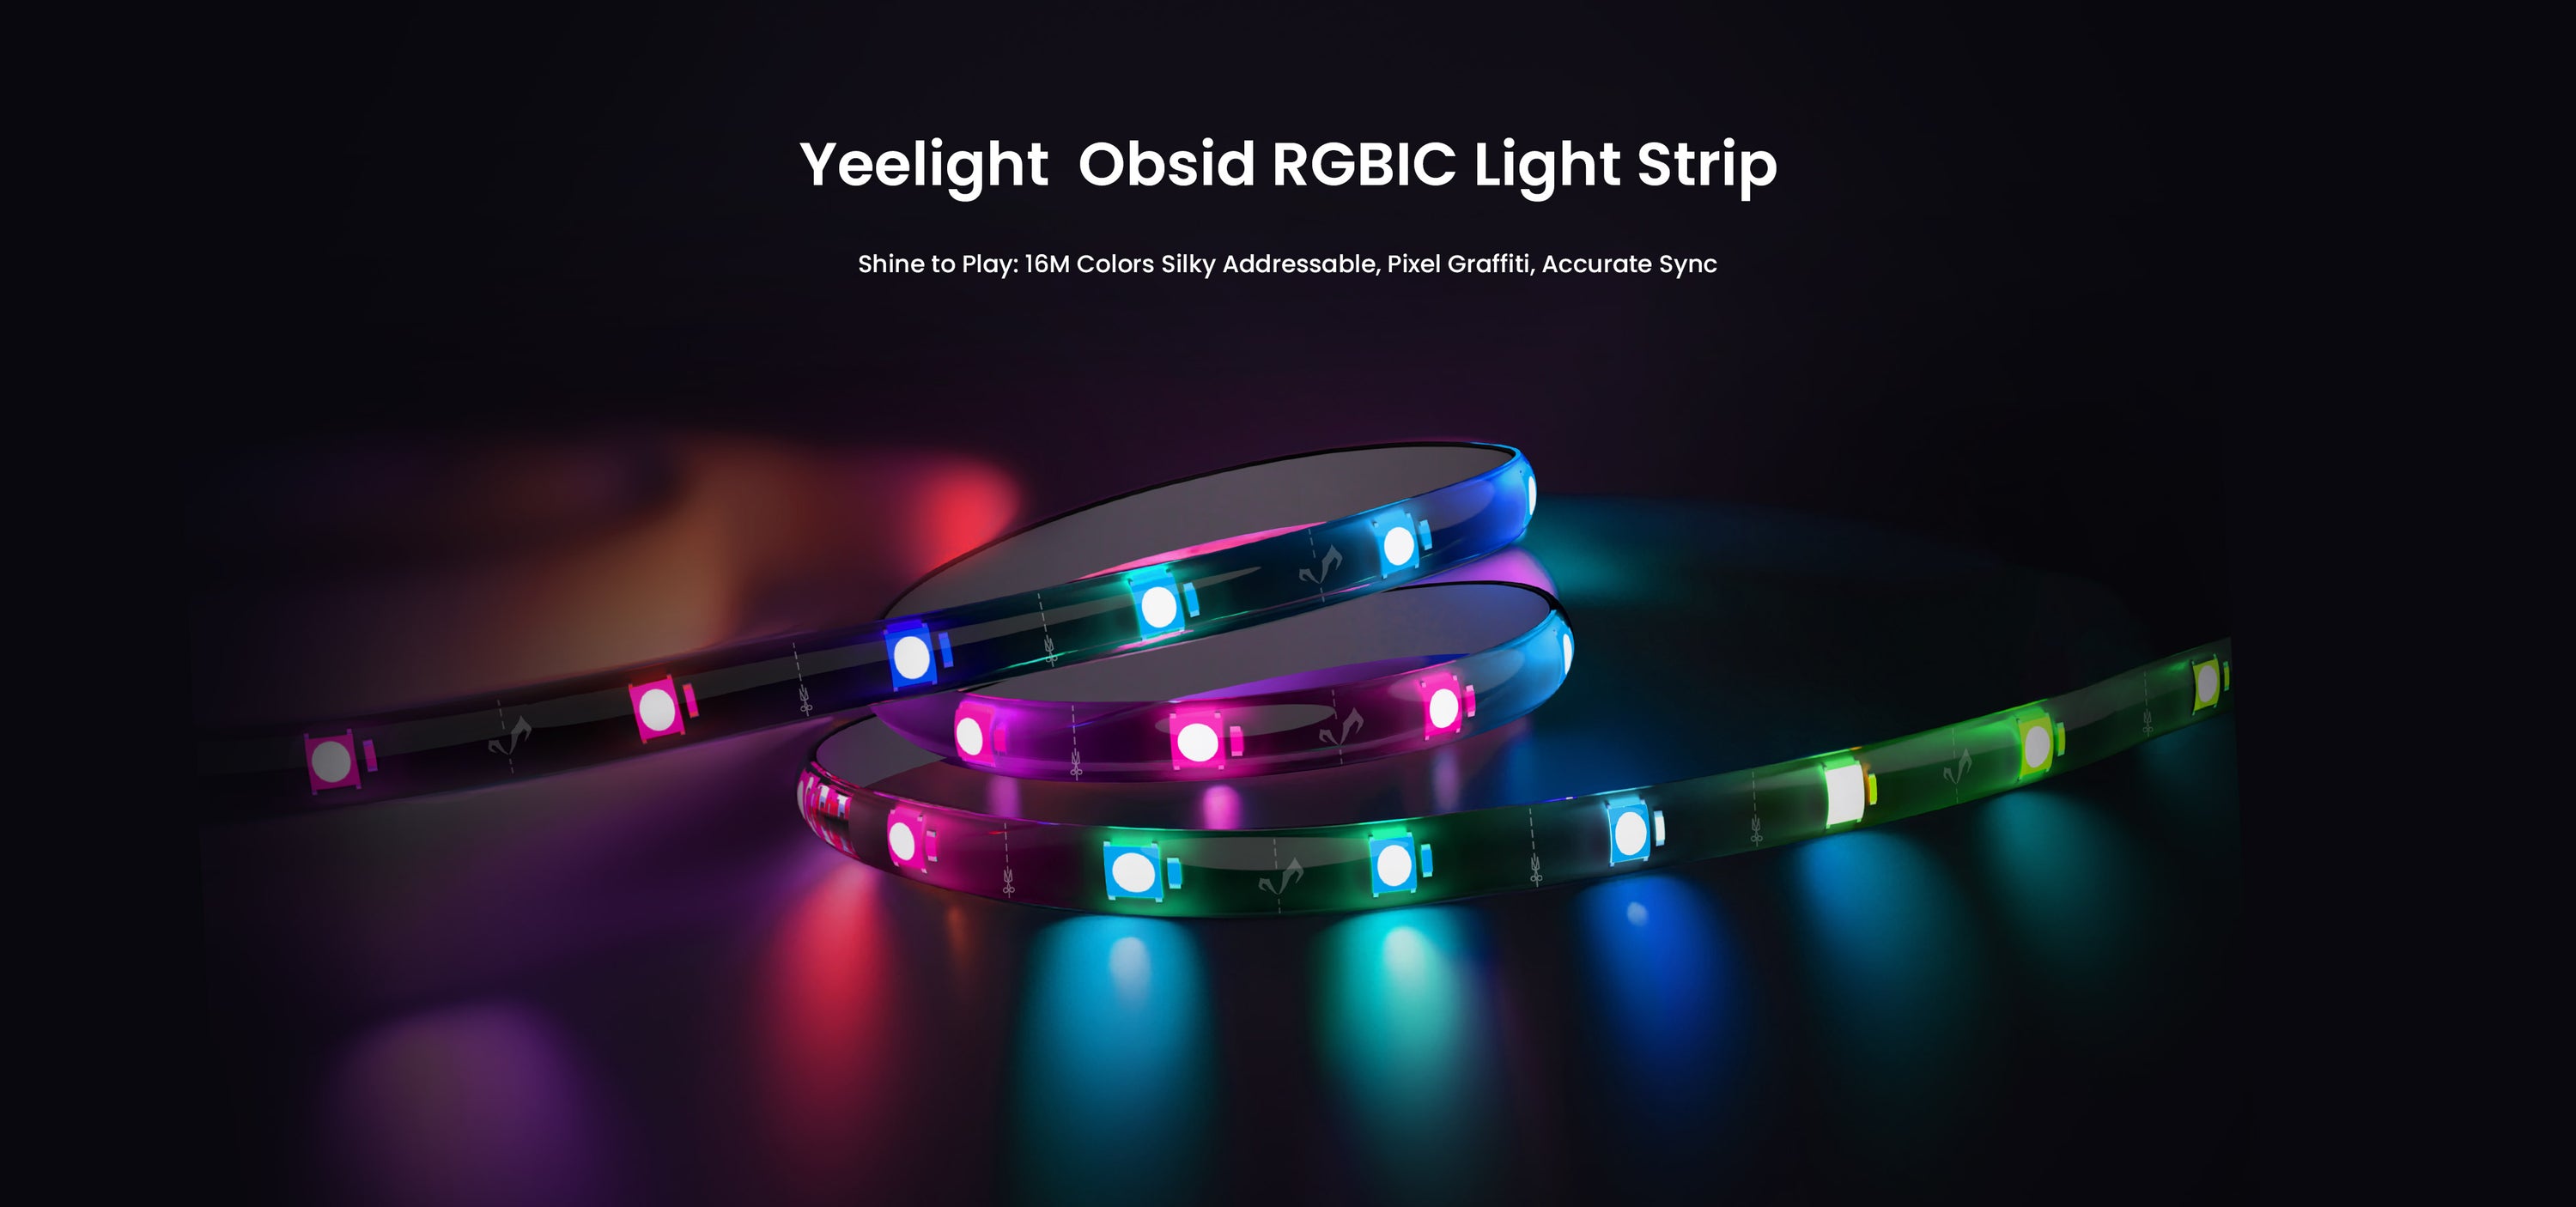 Firma Yeelight zapowiedziała taśmę Obsid RGBIC LED Light Strip, która może synchronizować się z muzyką i grami.